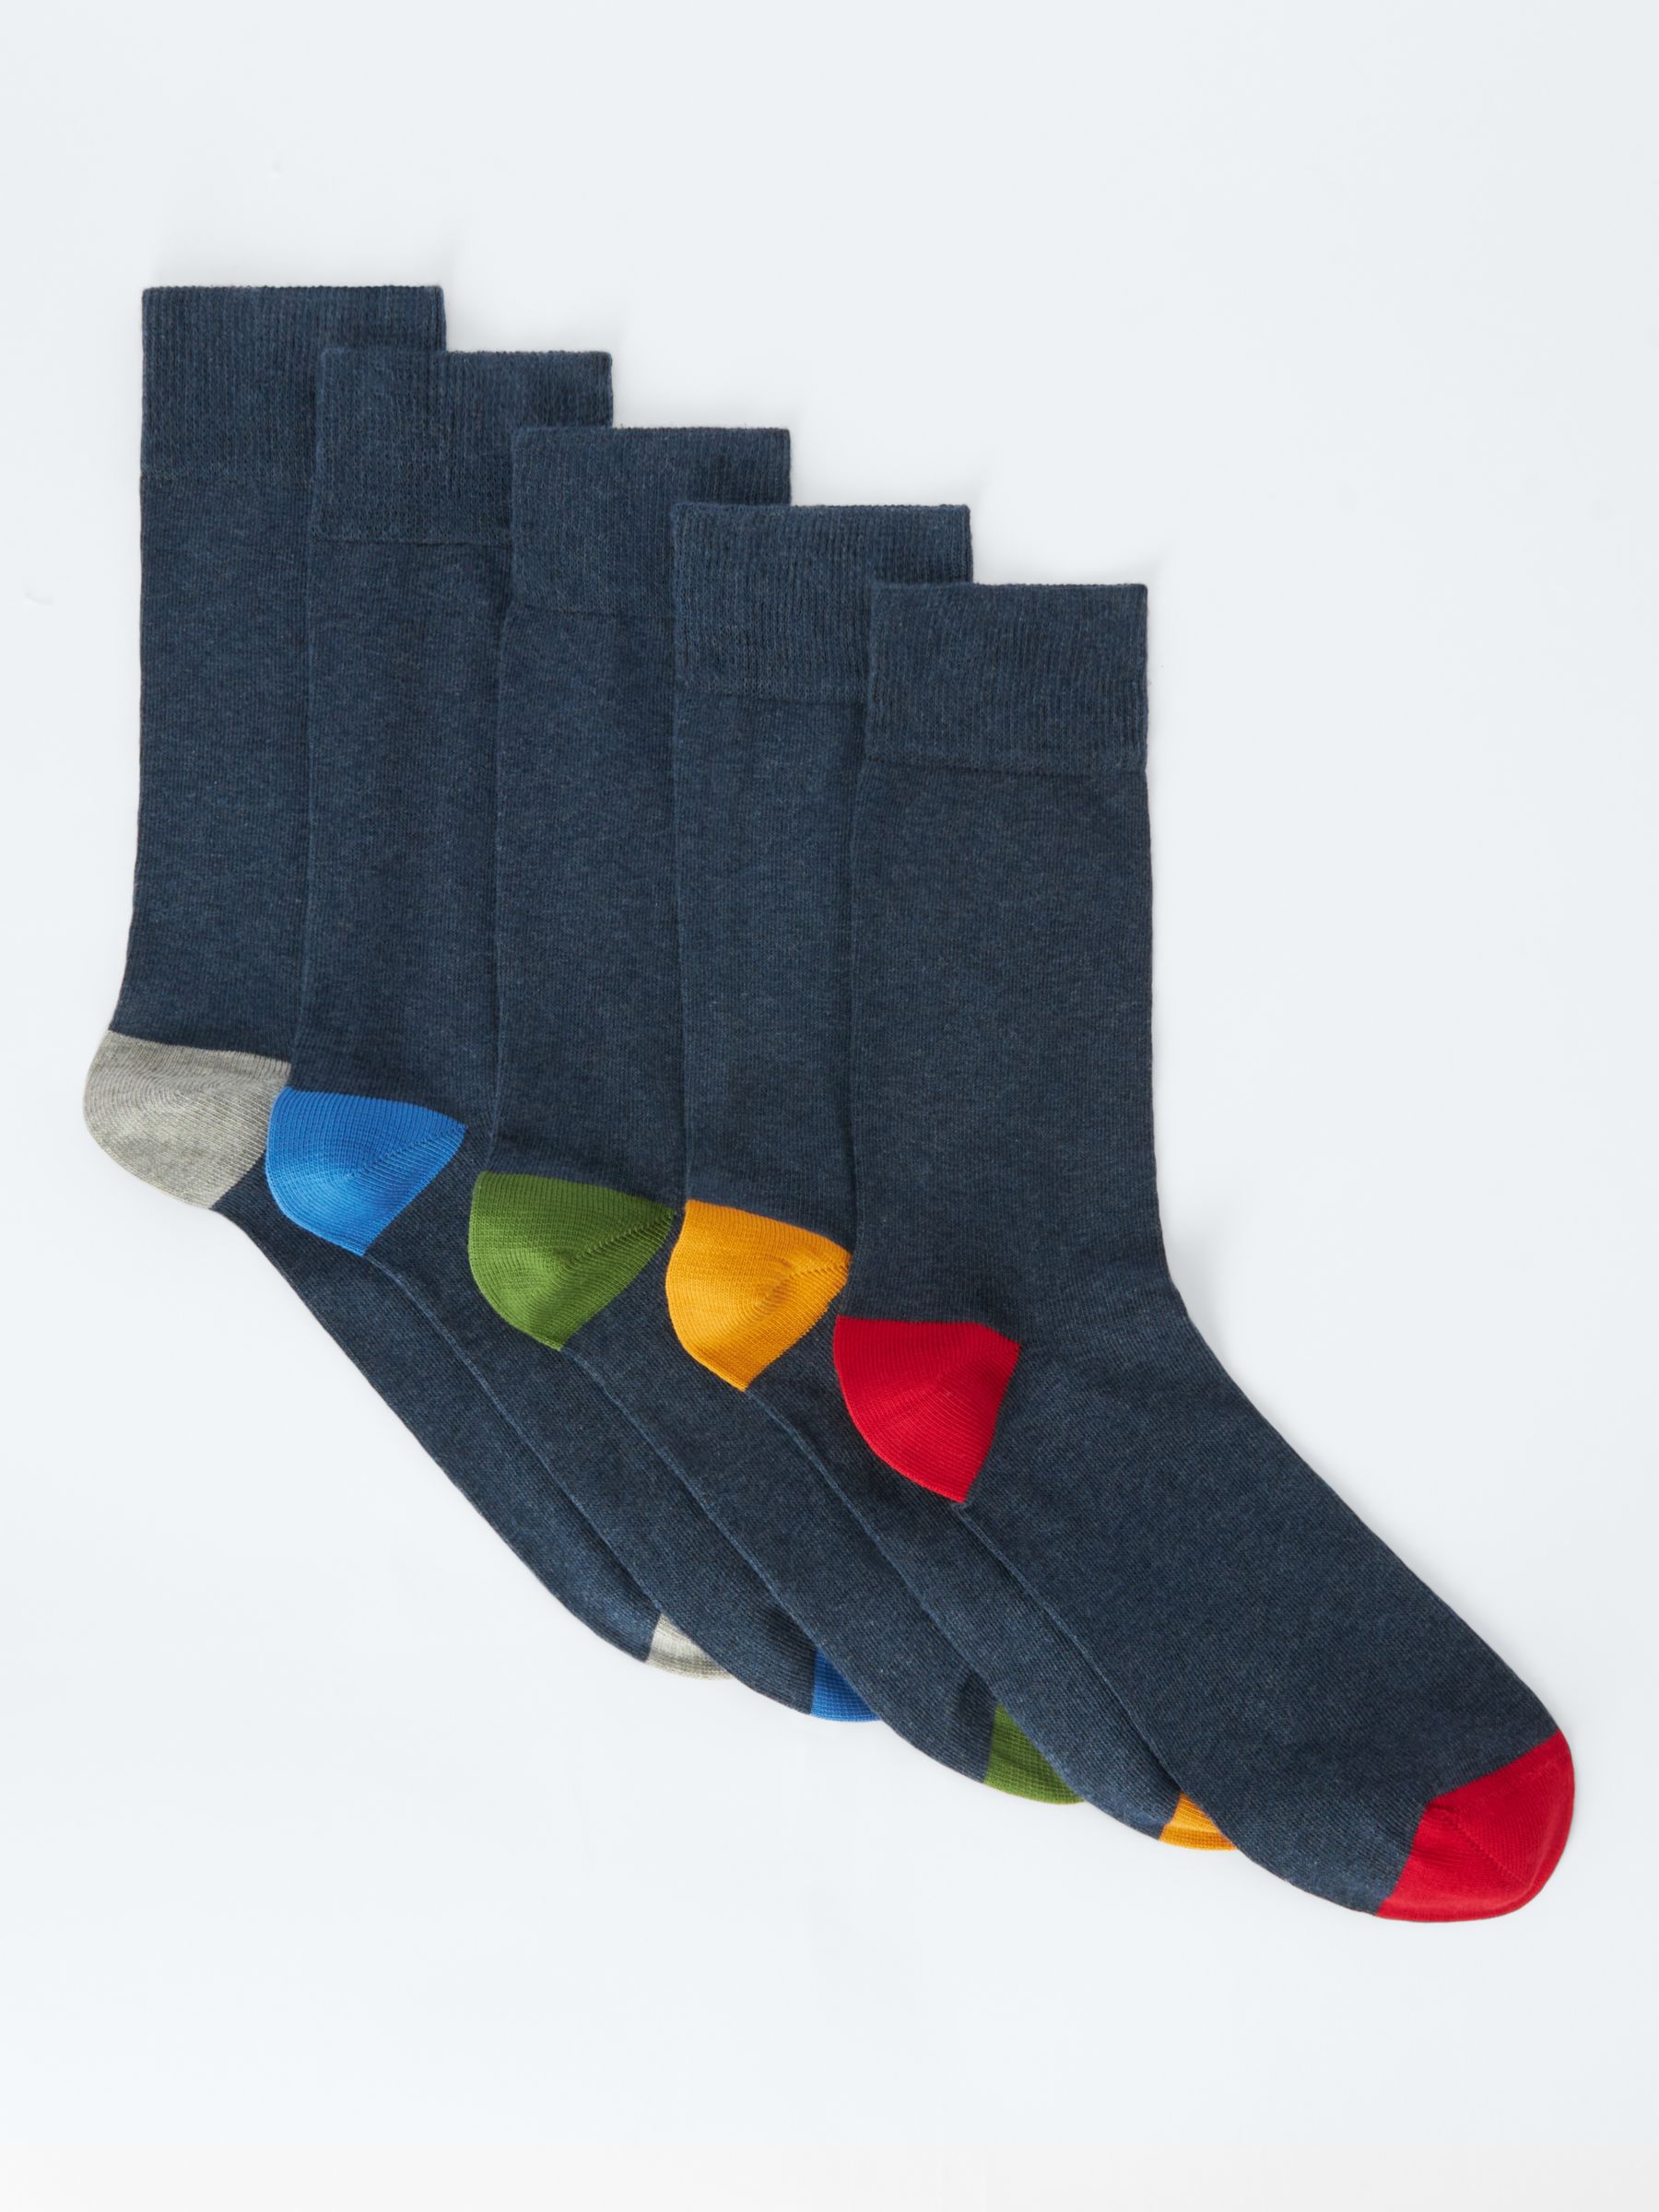 Buy John Lewis Heel/Toe Socks, Pack of 5, Navy/Multi Online at johnlewis.com